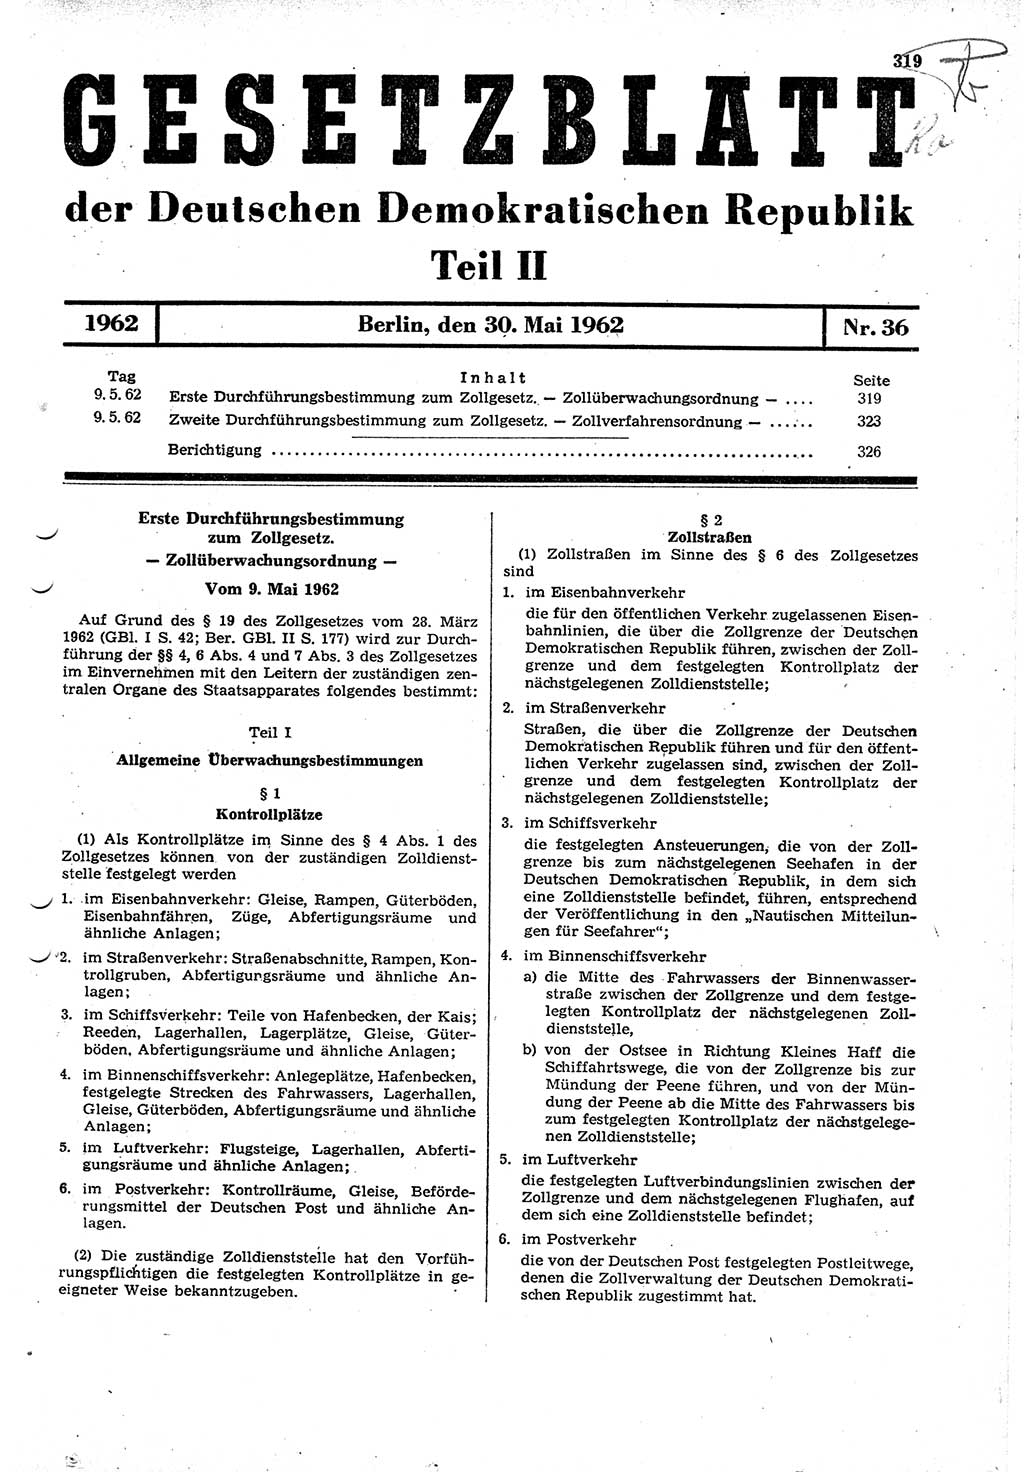 Gesetzblatt (GBl.) der Deutschen Demokratischen Republik (DDR) Teil ⅠⅠ 1962, Seite 319 (GBl. DDR ⅠⅠ 1962, S. 319)